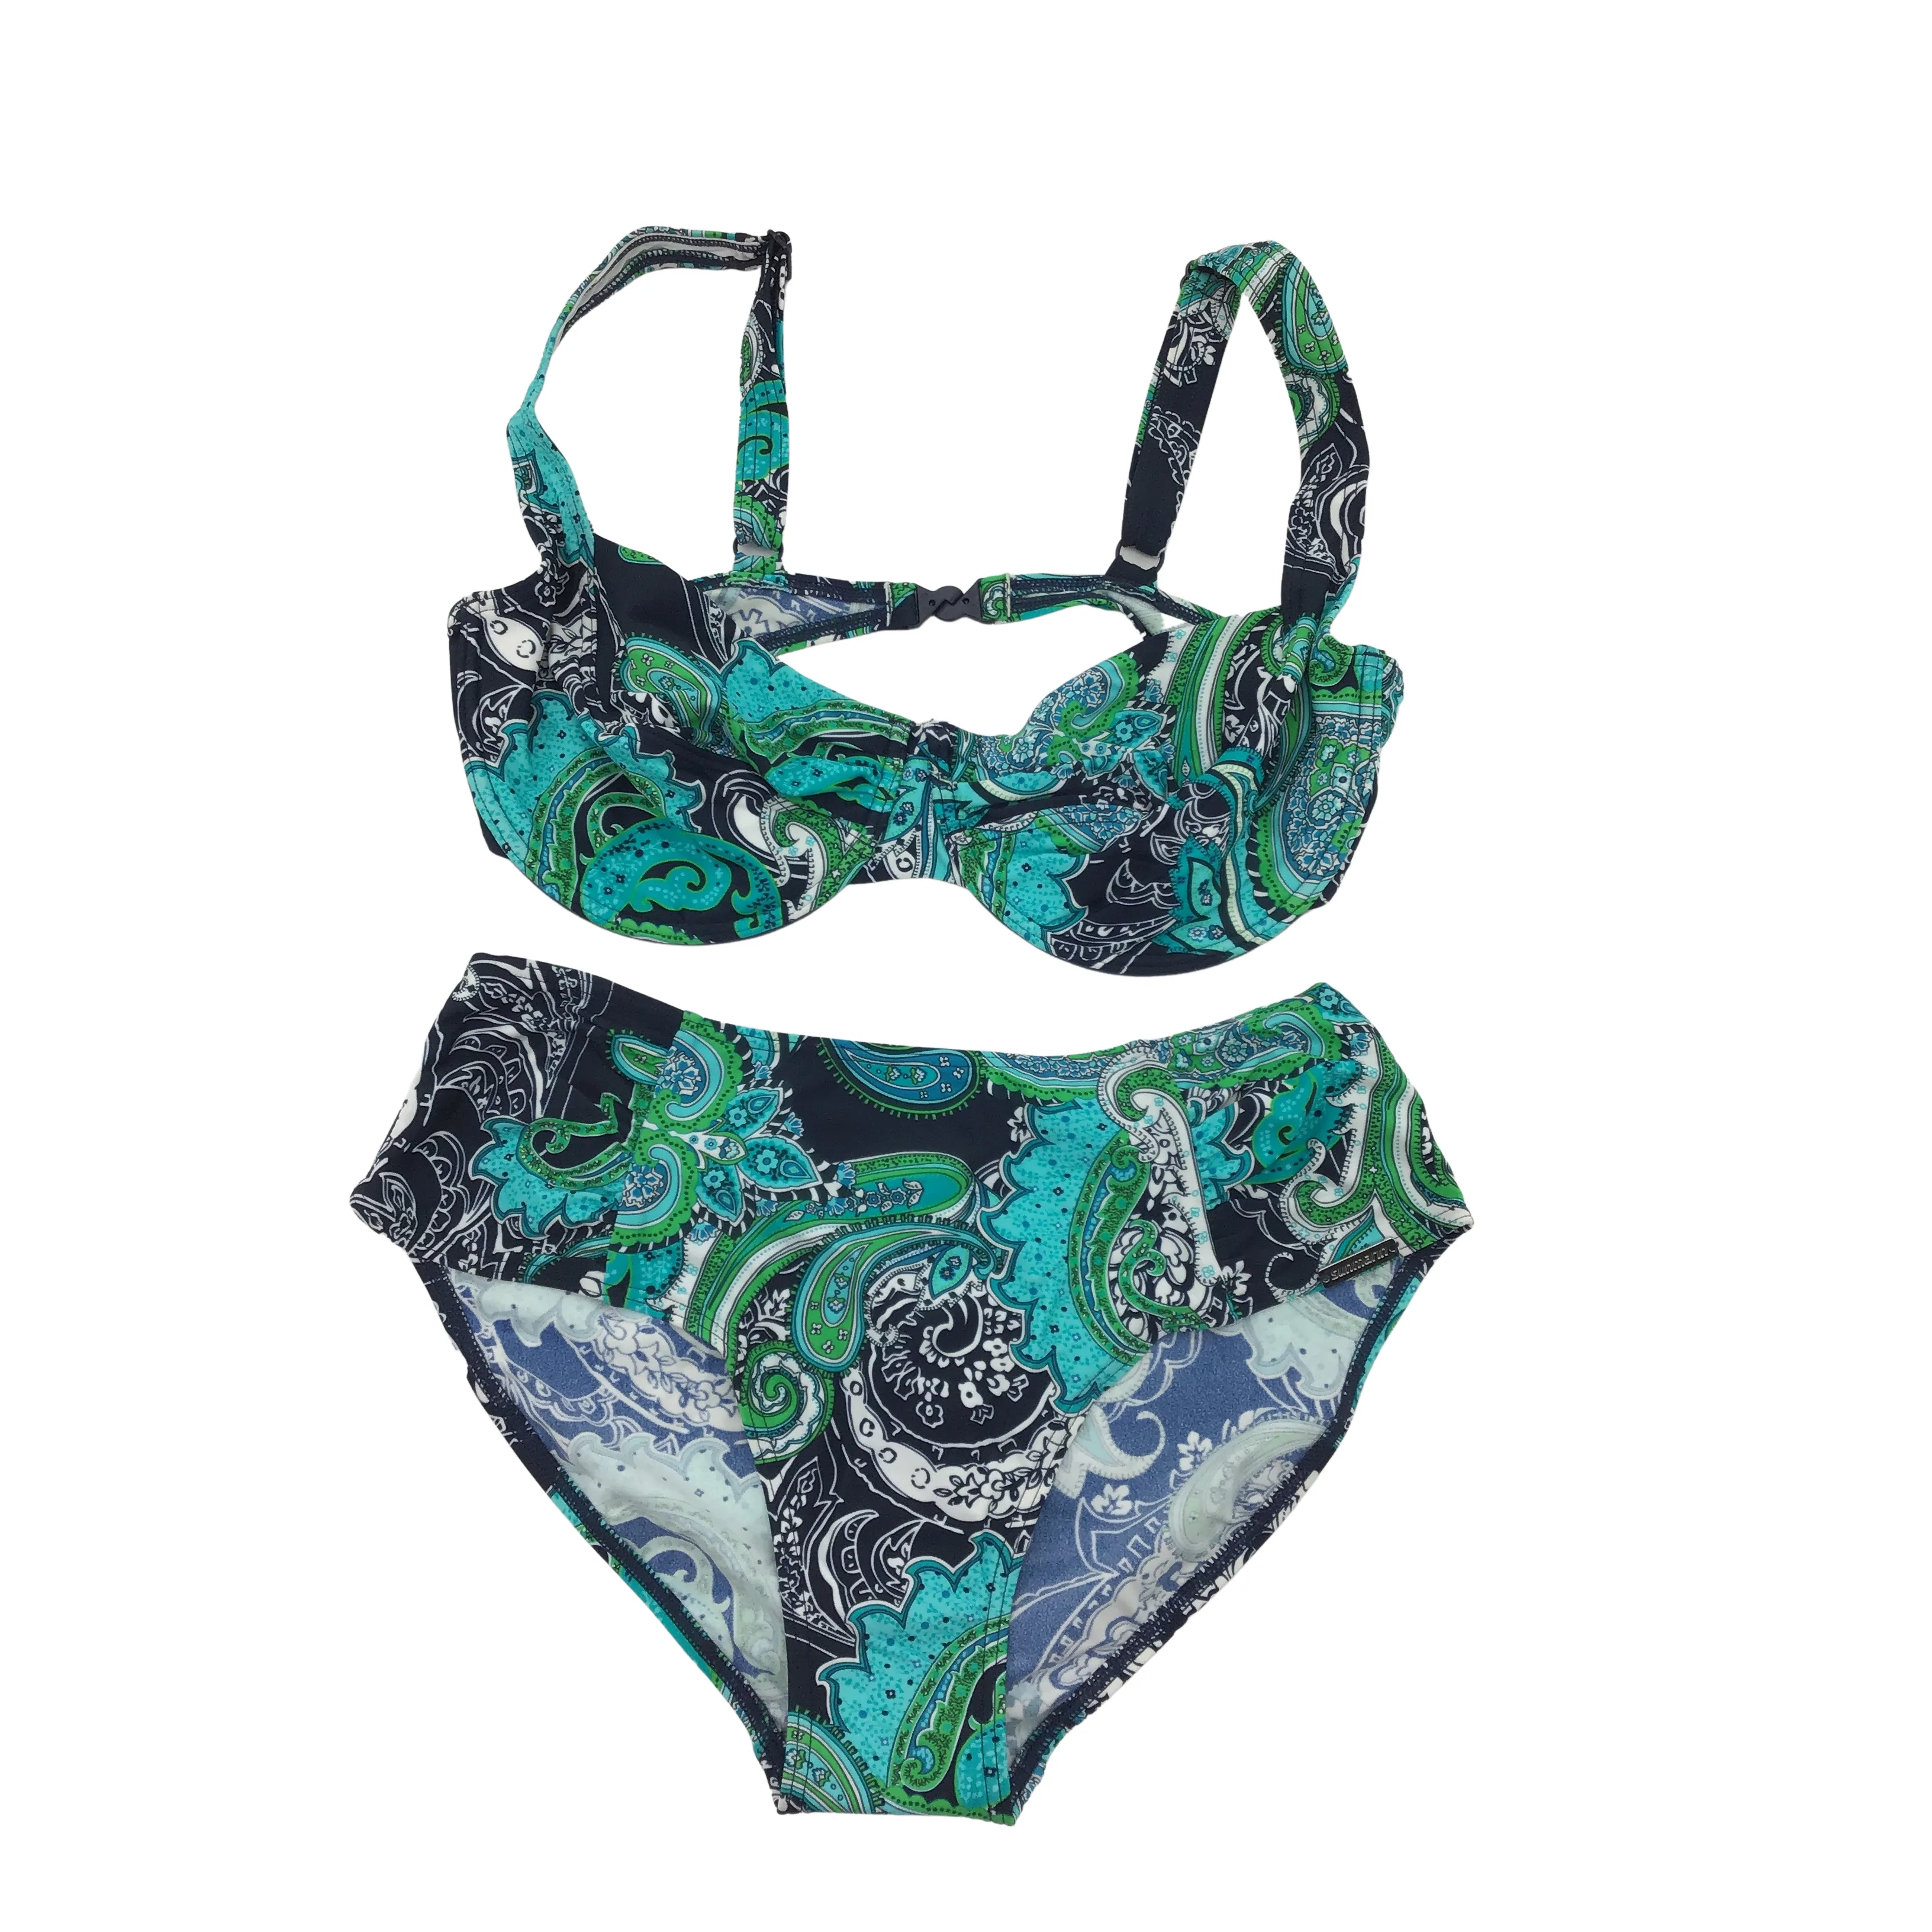 Sunmarin Women's Bathing Suit: Bikini/ Aqua and Green / 10E